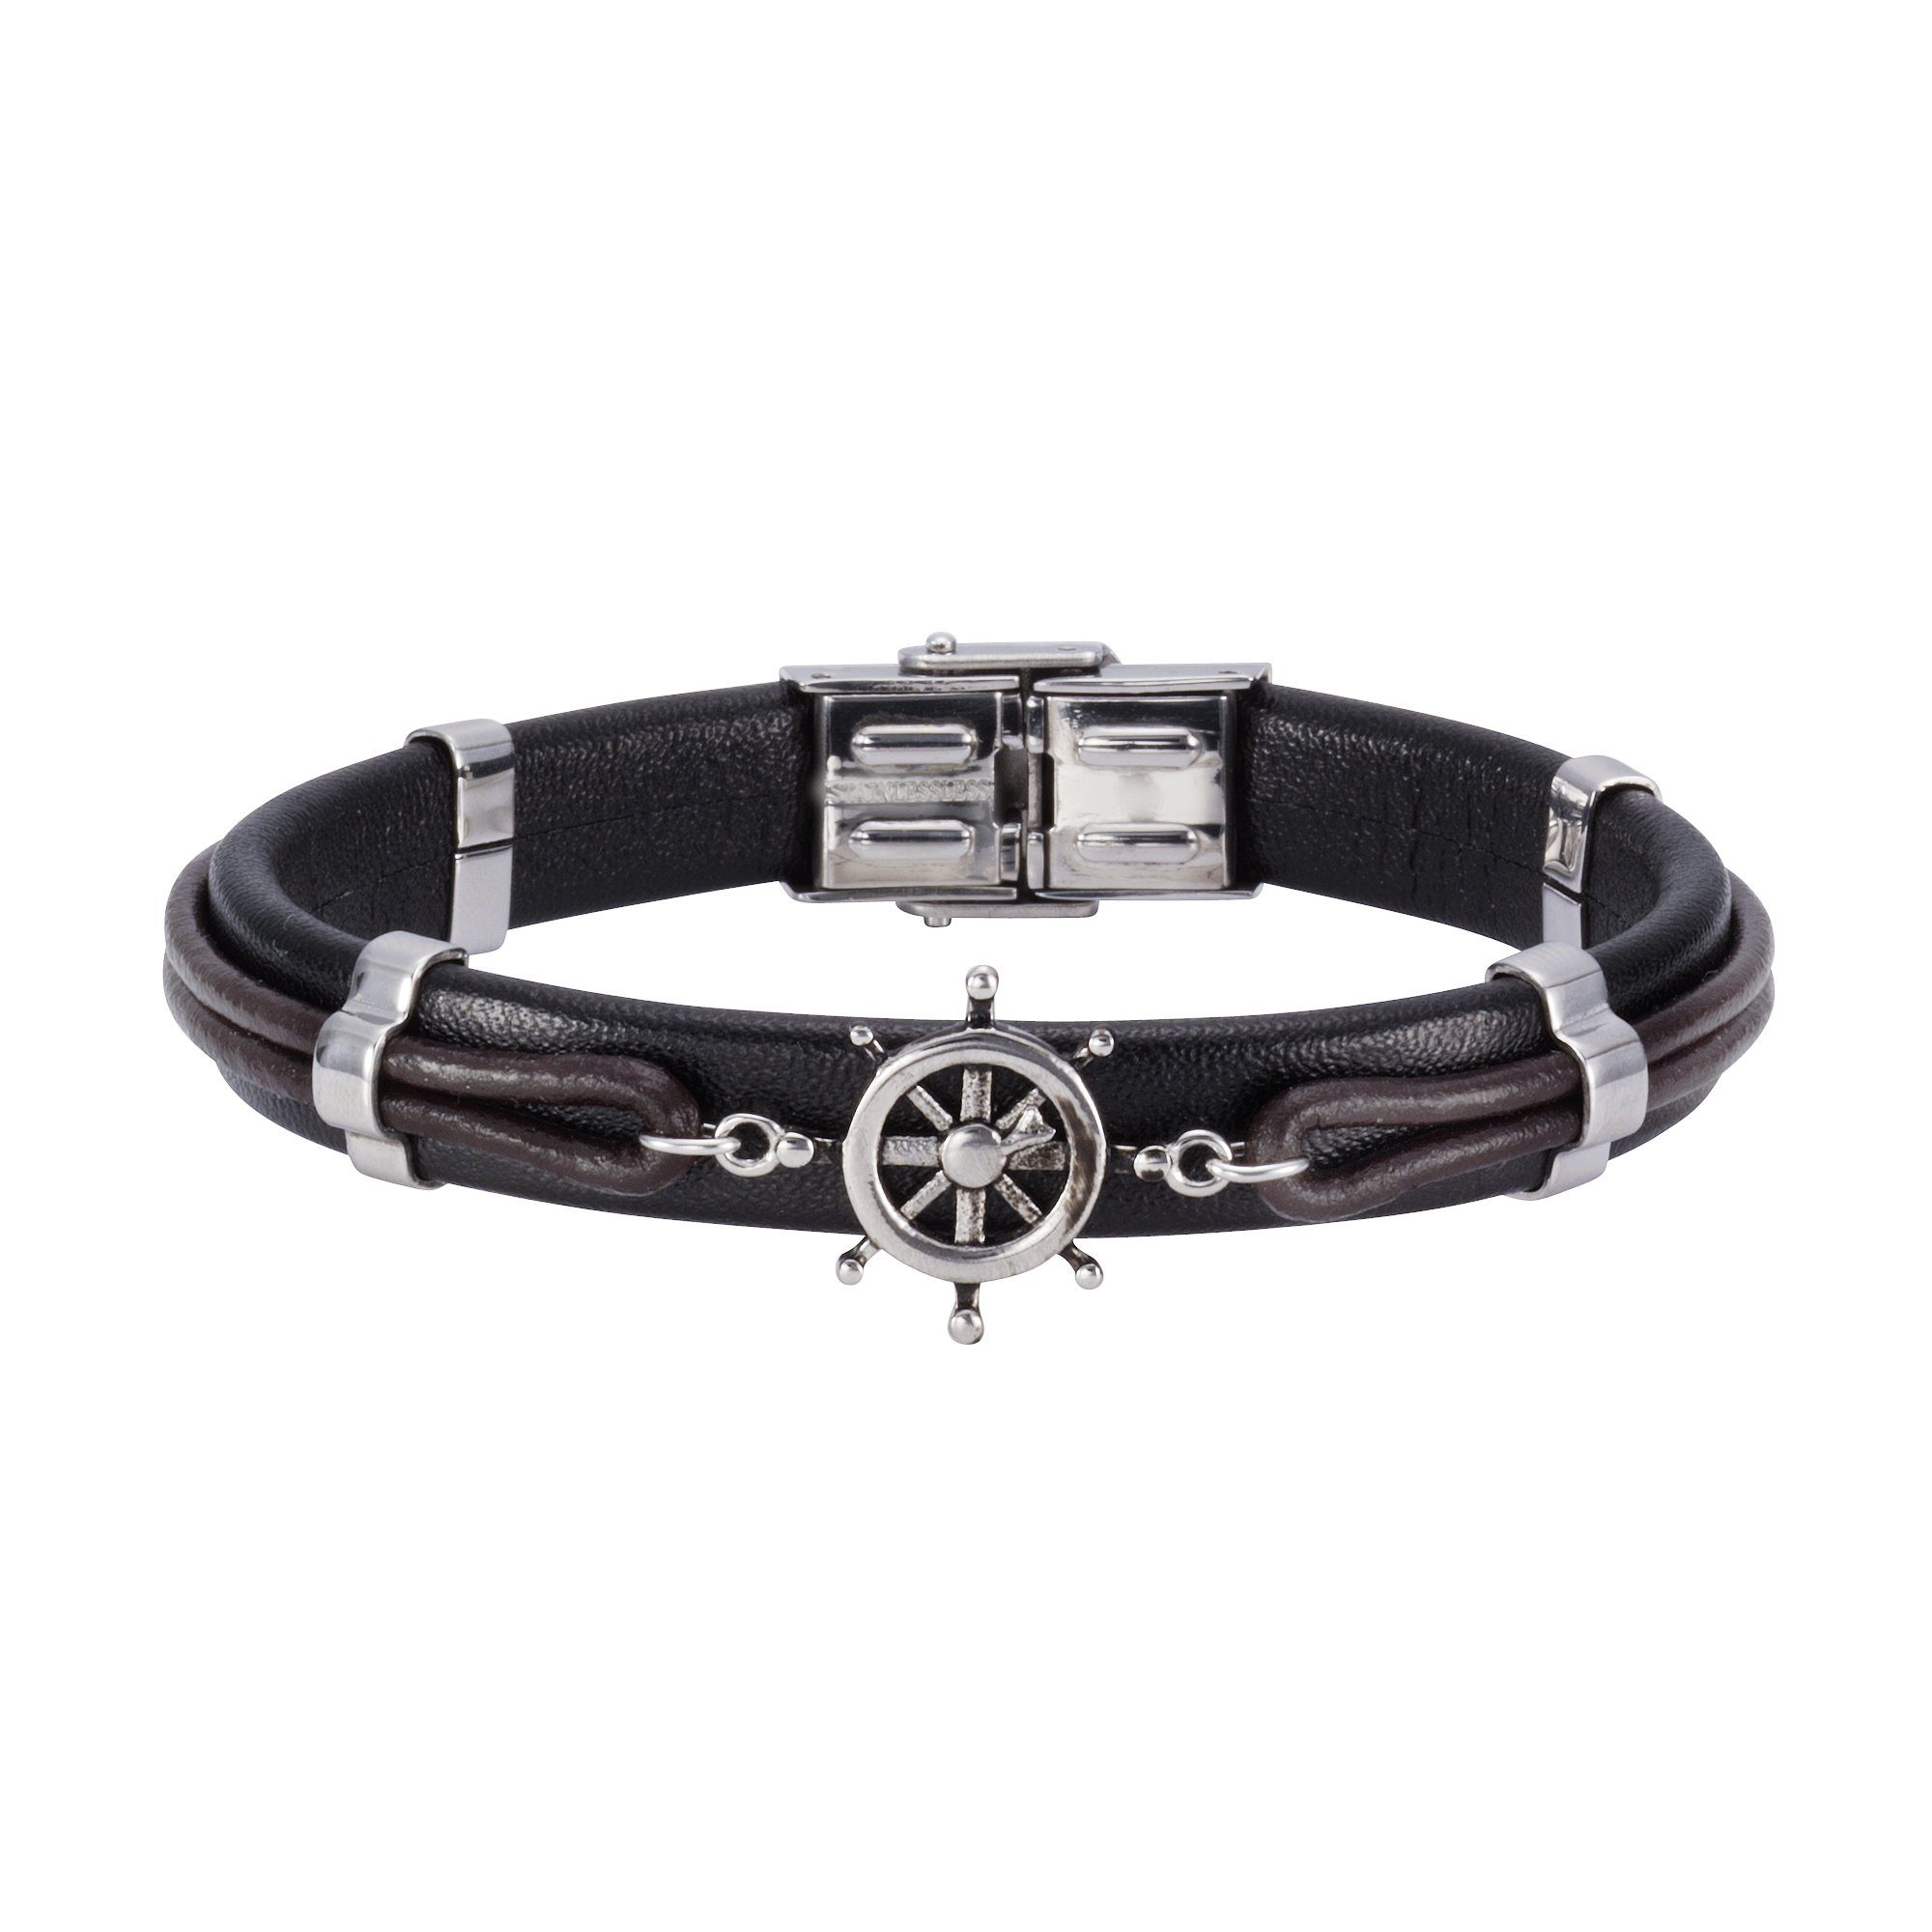 NOX Armband Leder schwarz Edelstahl, Ehemann ideale Das braun Geschenk Freund oder für